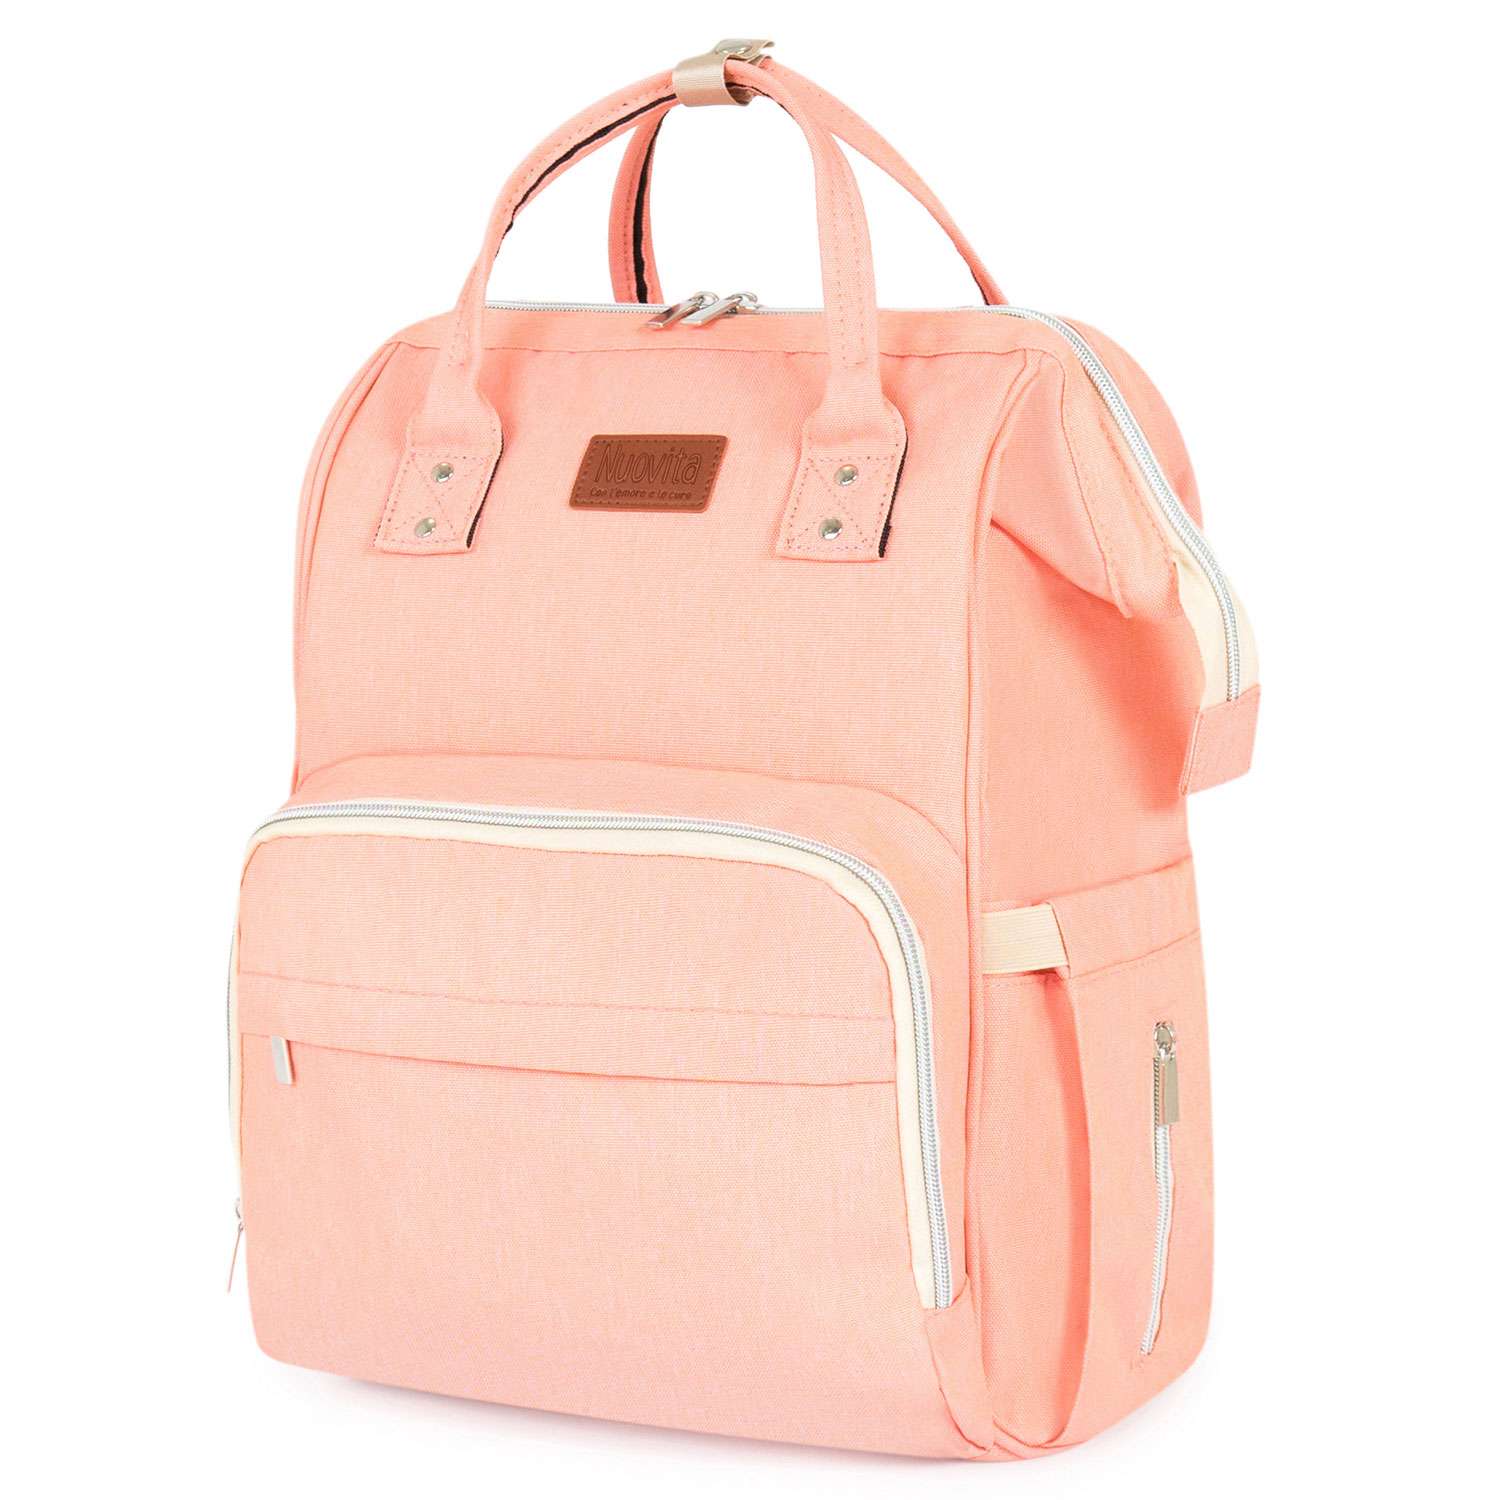 Рюкзак для мамы Nuovita CAPCAP classic Розовый - фото 1